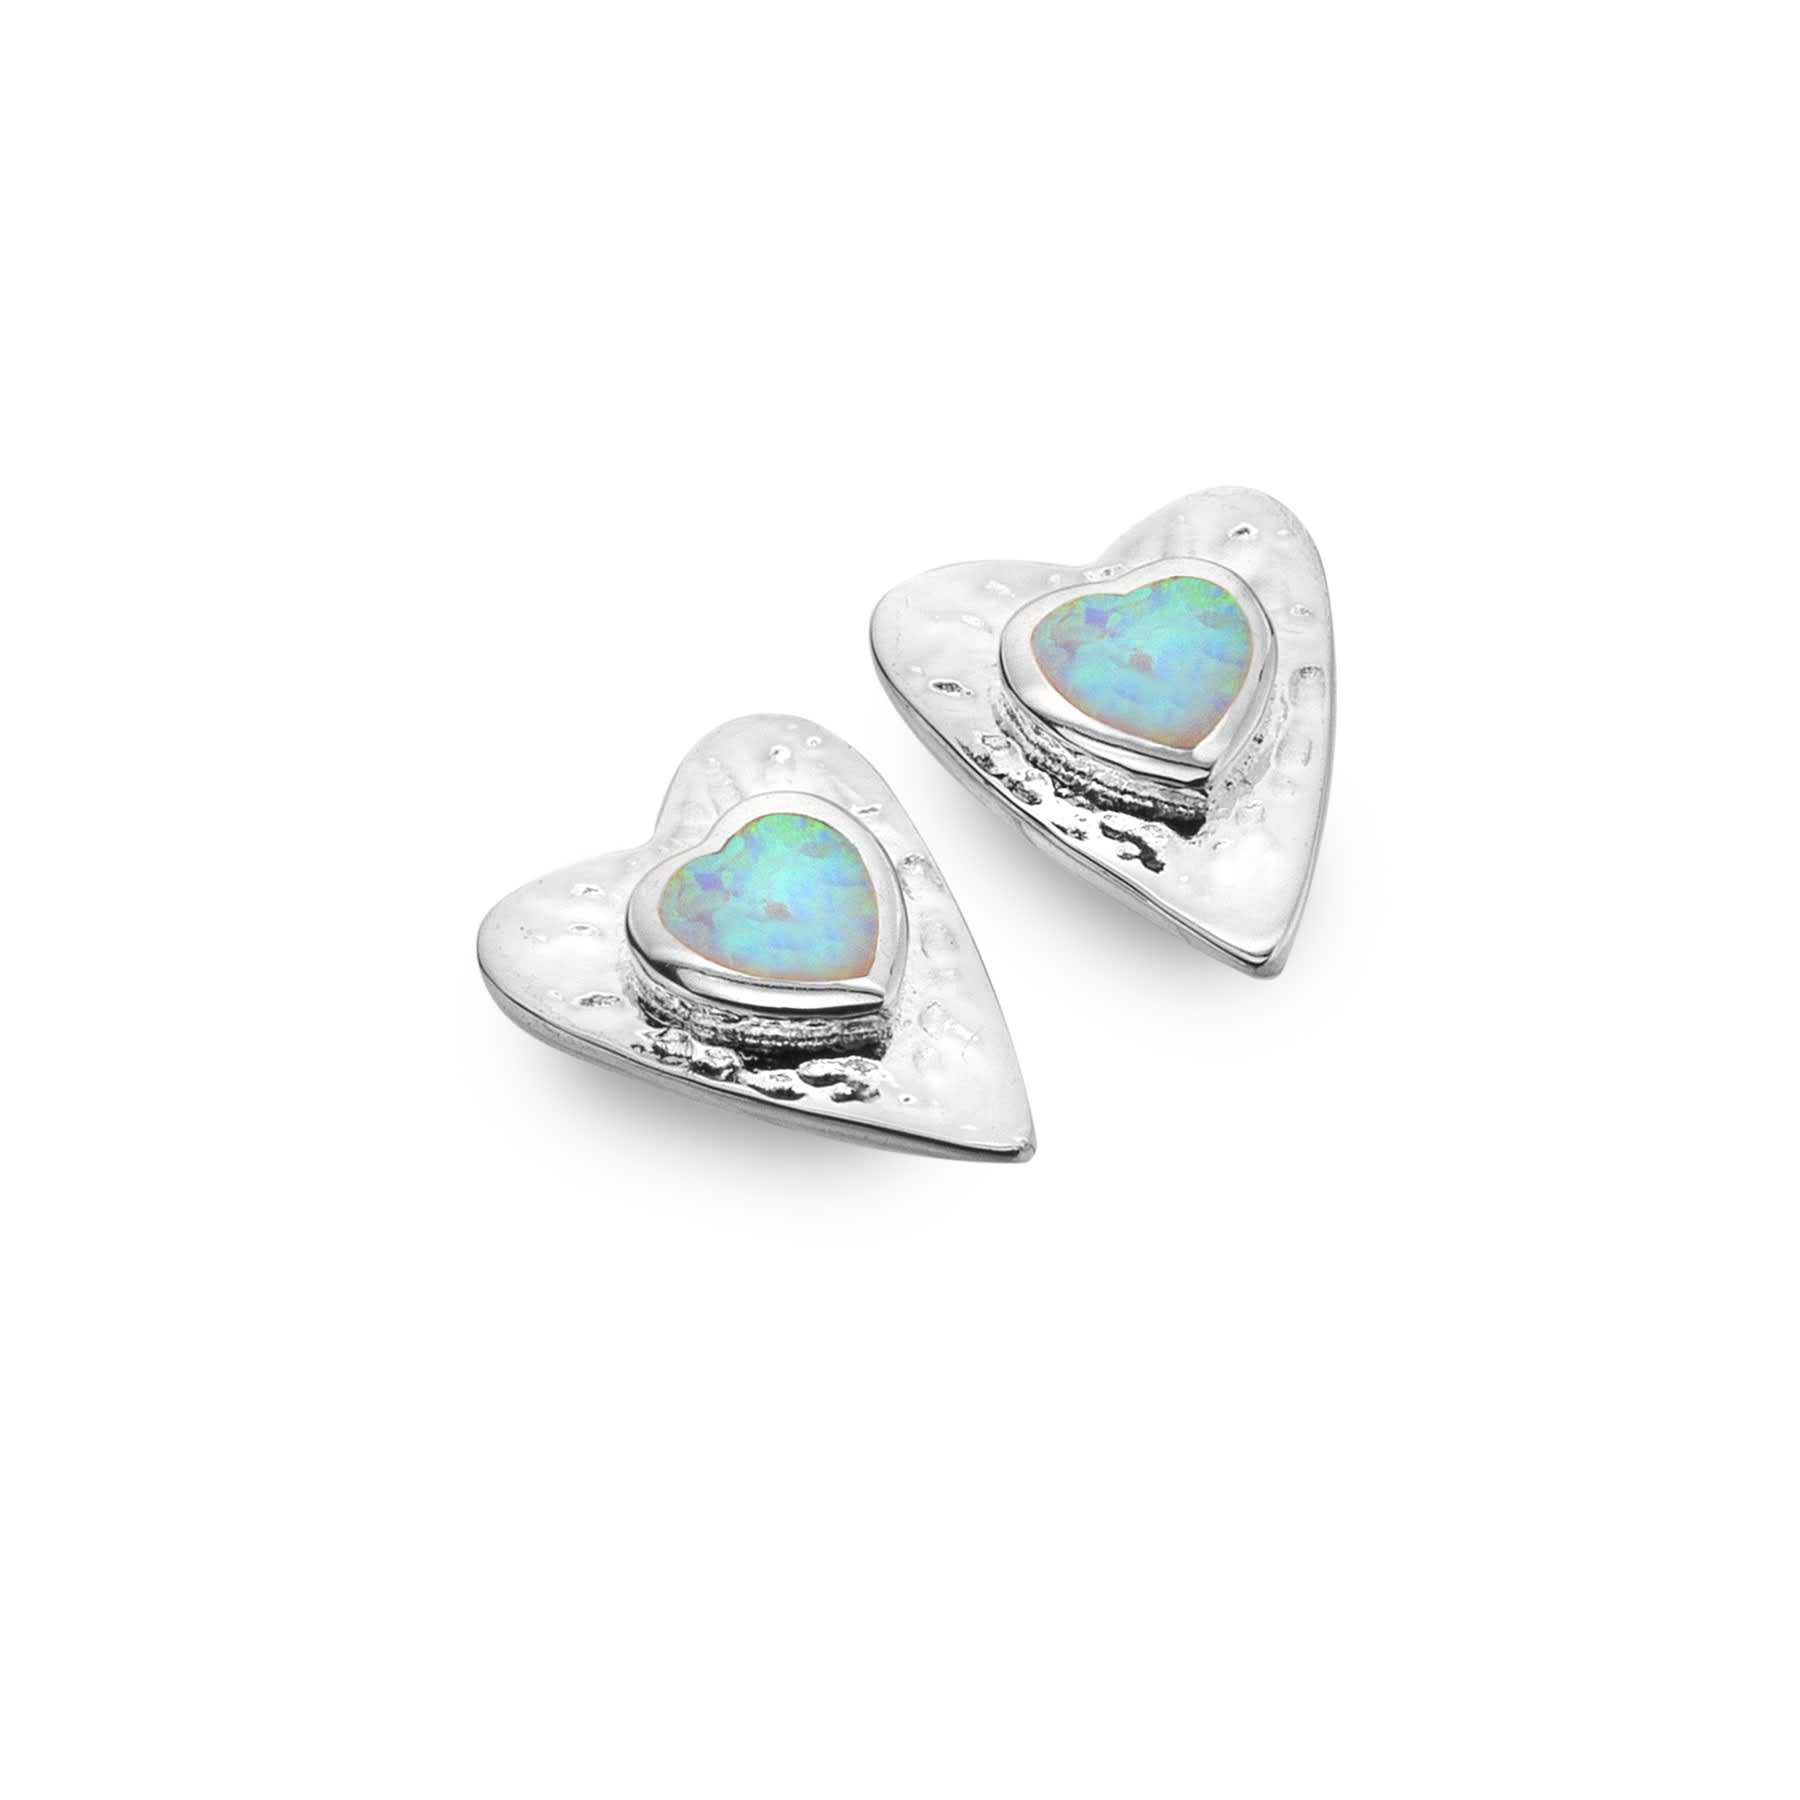 Opal Heart Stud Earrings - The Nancy Smillie Shop - Art, Jewellery & Designer Gifts Glasgow